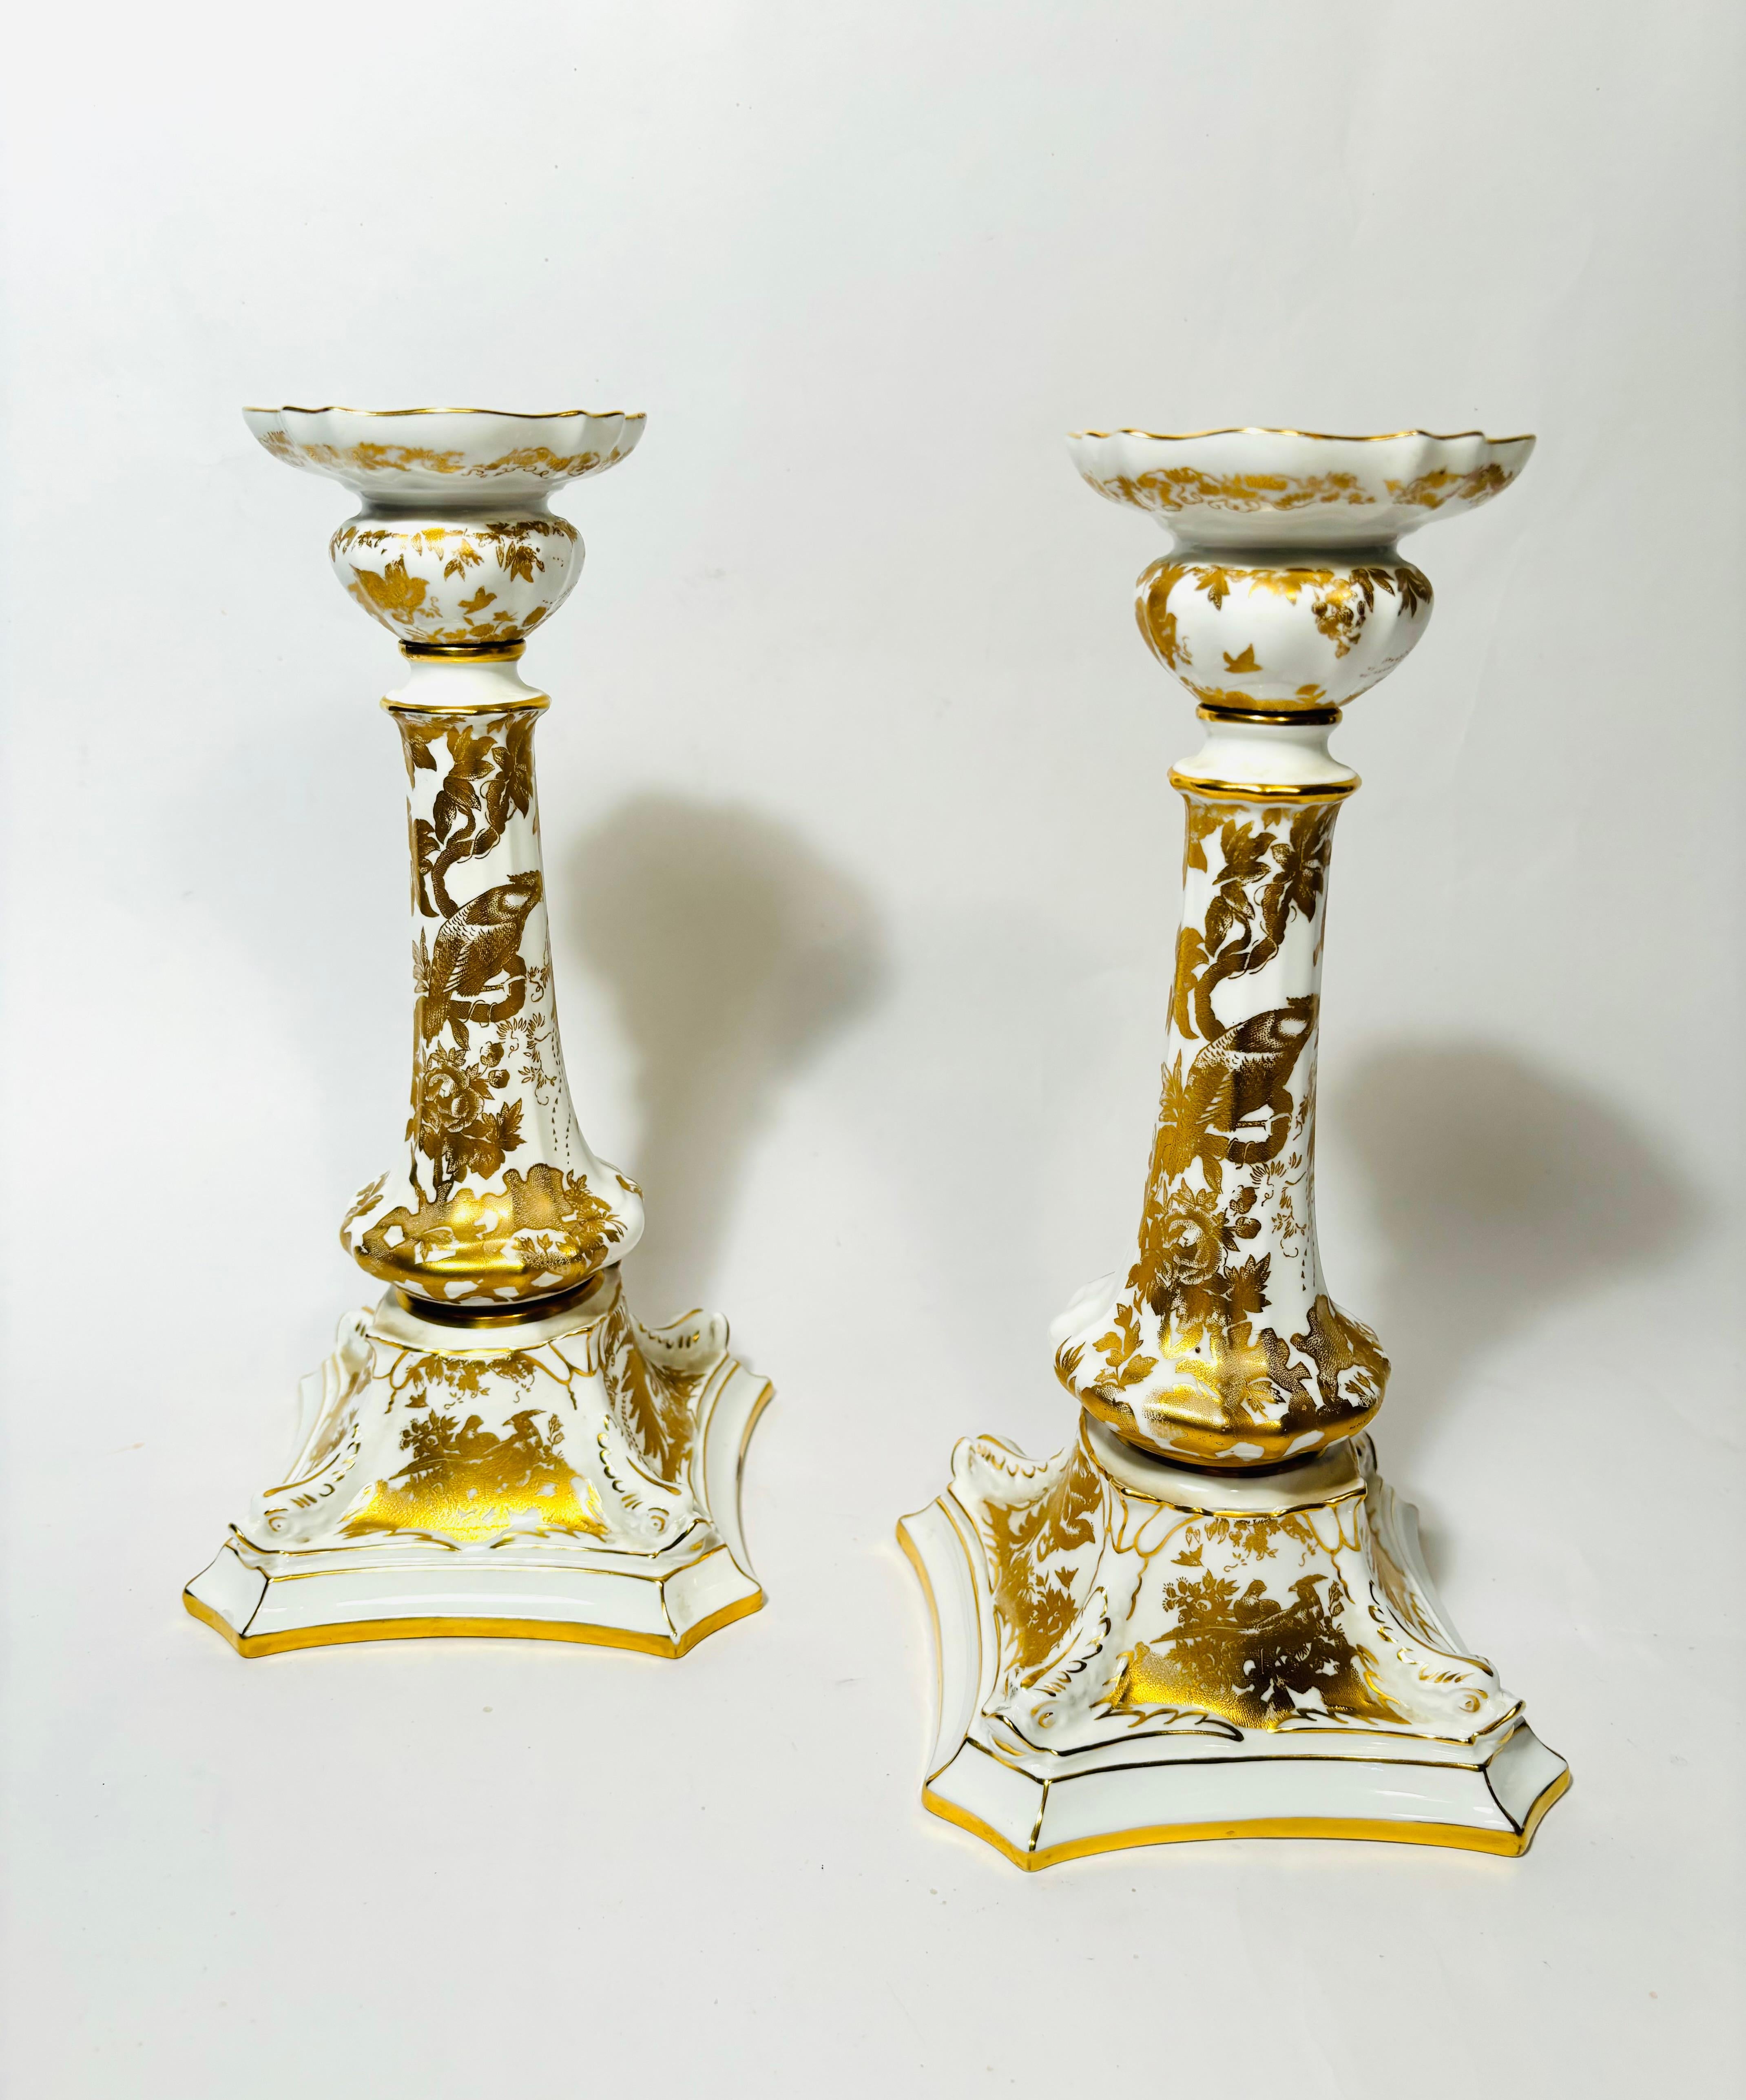 Une élégante paire de chandeliers en or 24 carats et en porcelaine blanche de la célèbre maison anglaise Royal Crown Derby. Ce motif élaboré d'oiseaux et de paons ornés est appliqué sur l'ensemble des pièces. Le motif Aves a été adapté d'un motif de